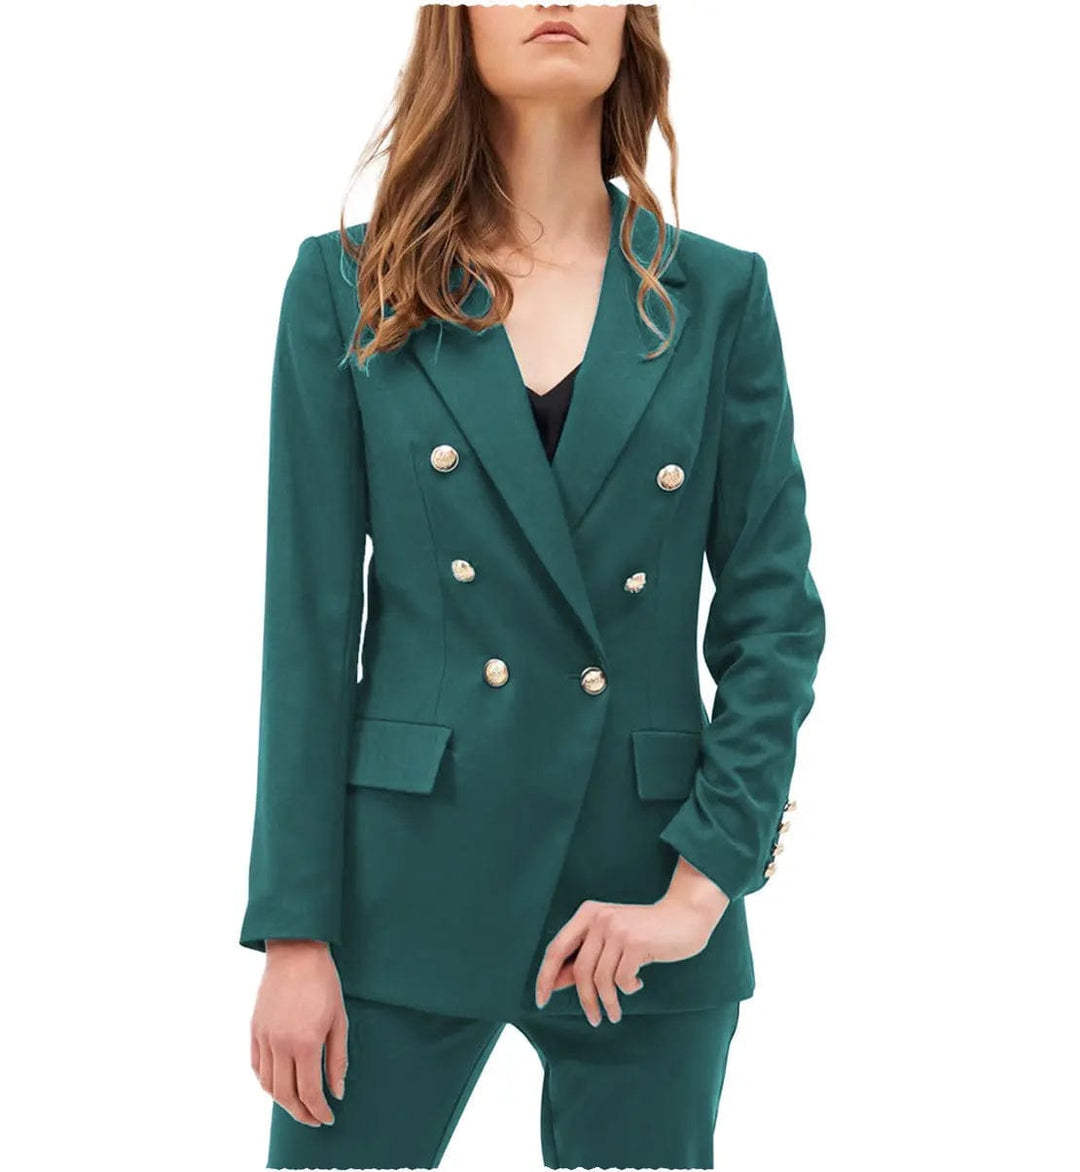 solovedress Fashion Notch Lapel Blazer  Flat 2 Pieces Women Suit